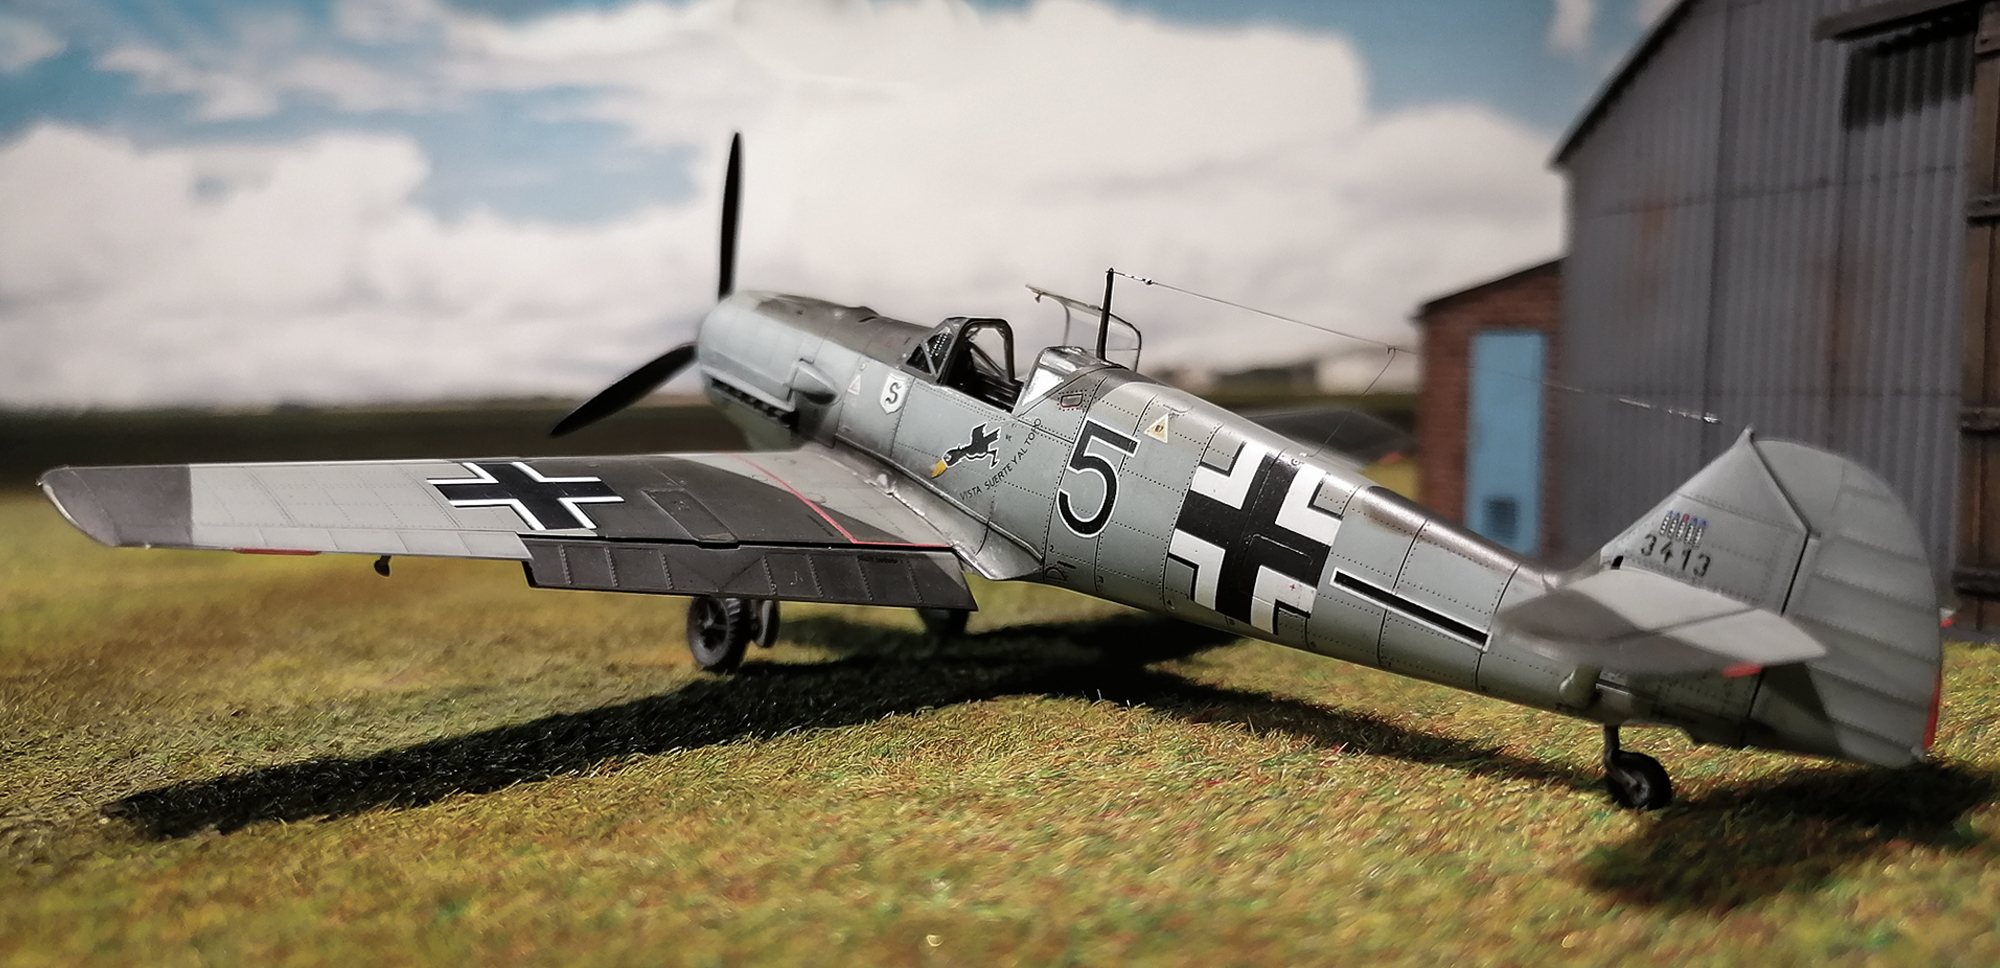 Eduard_Bf-109E-1_Adlerangriff_001